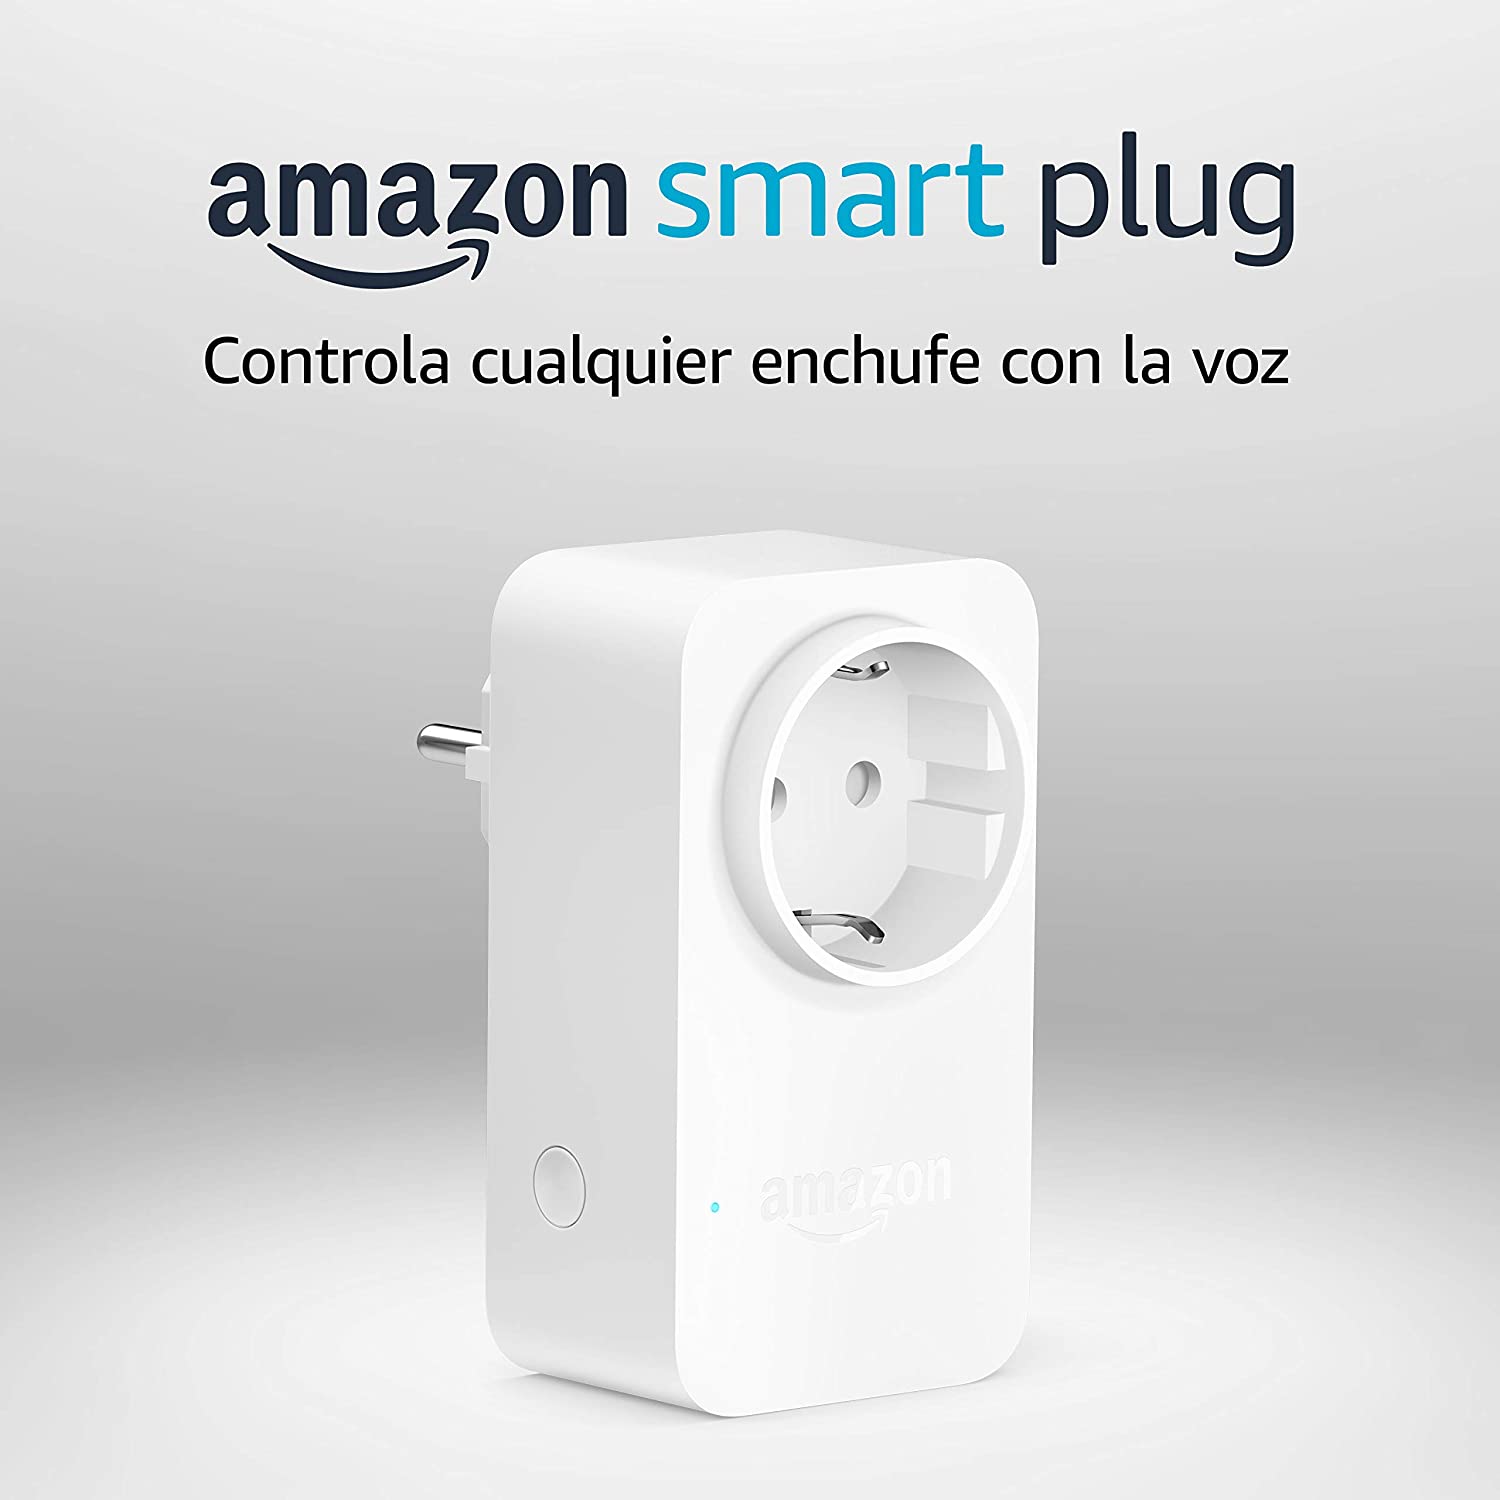 Amazon Smart Plug enchufe inteligente wifi